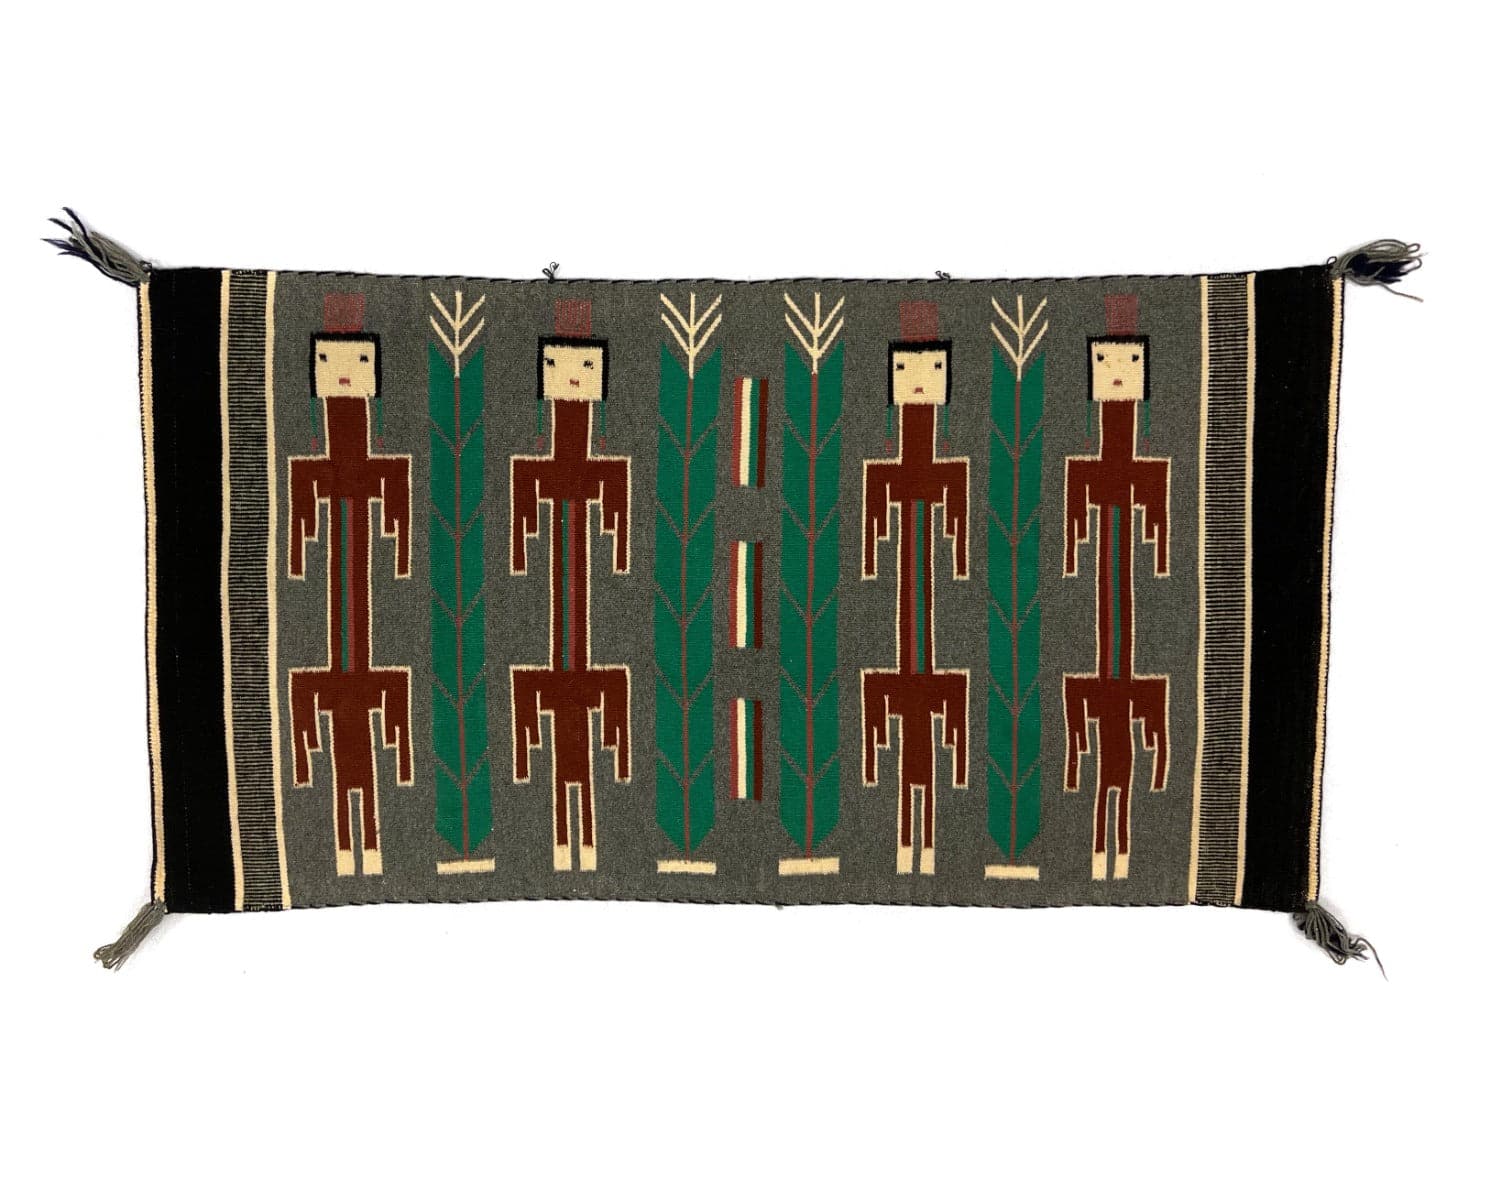 Navajo Pictorial Rug with Yei Figures and Cornstalks c. 1960-70s, 27" x 49.5" (T91660-1221-001) 6